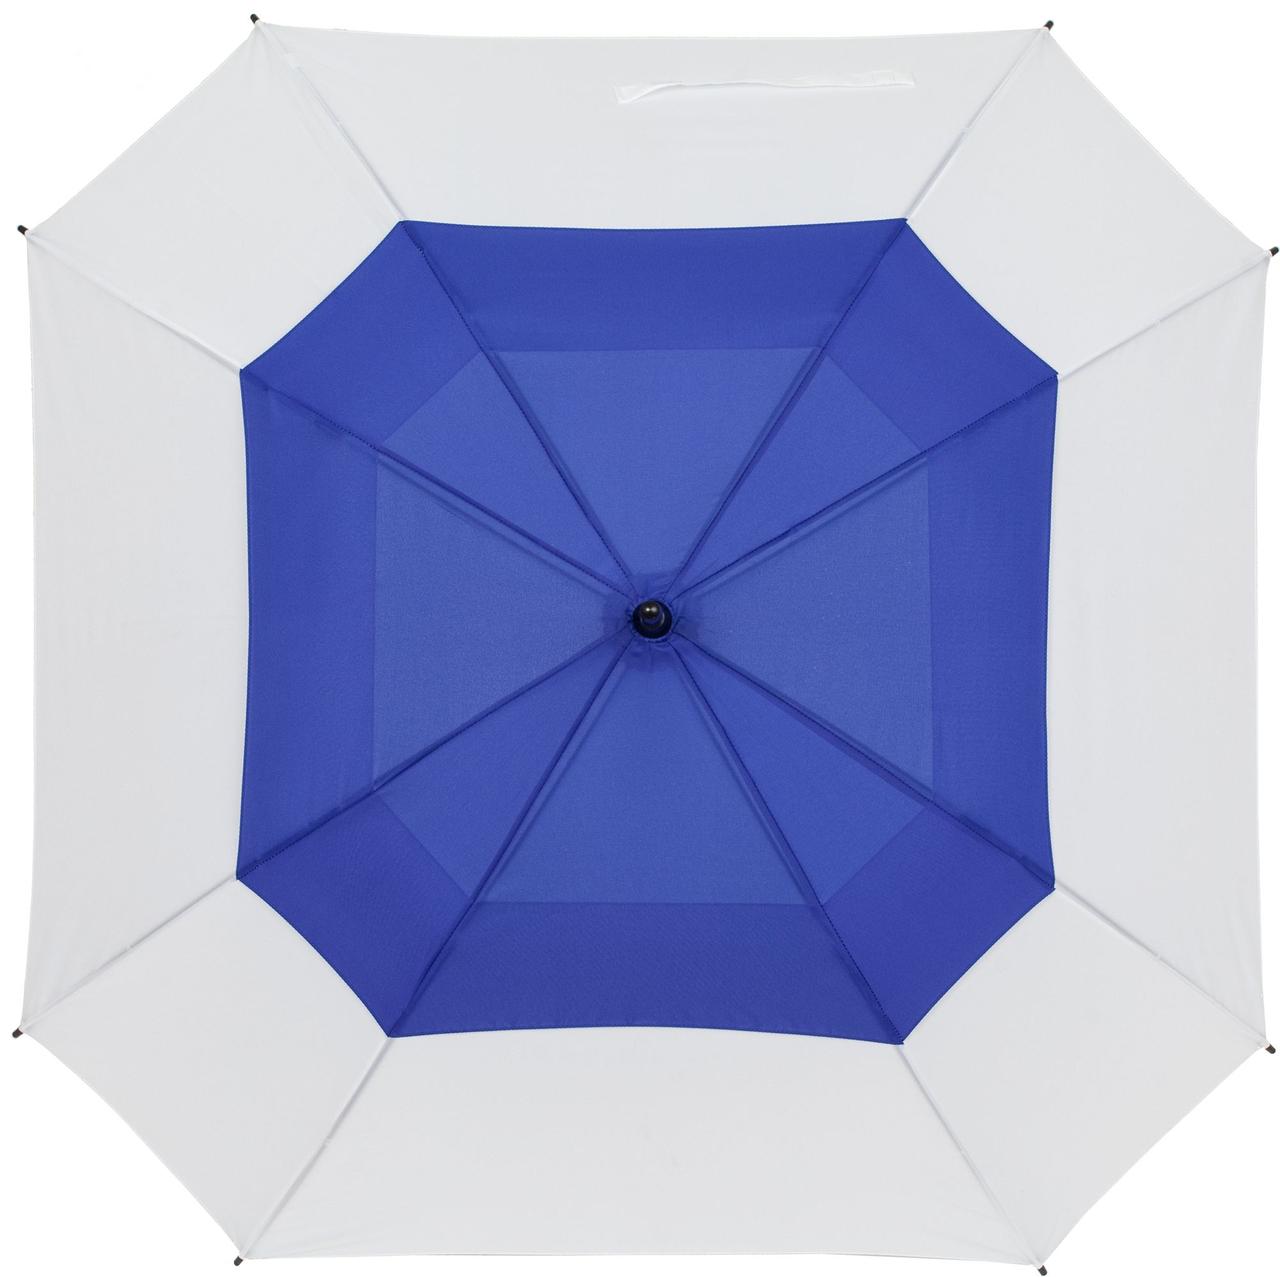 Квадратный зонт-трость Octagon, синий с белым (артикул 12369.46), фото 1